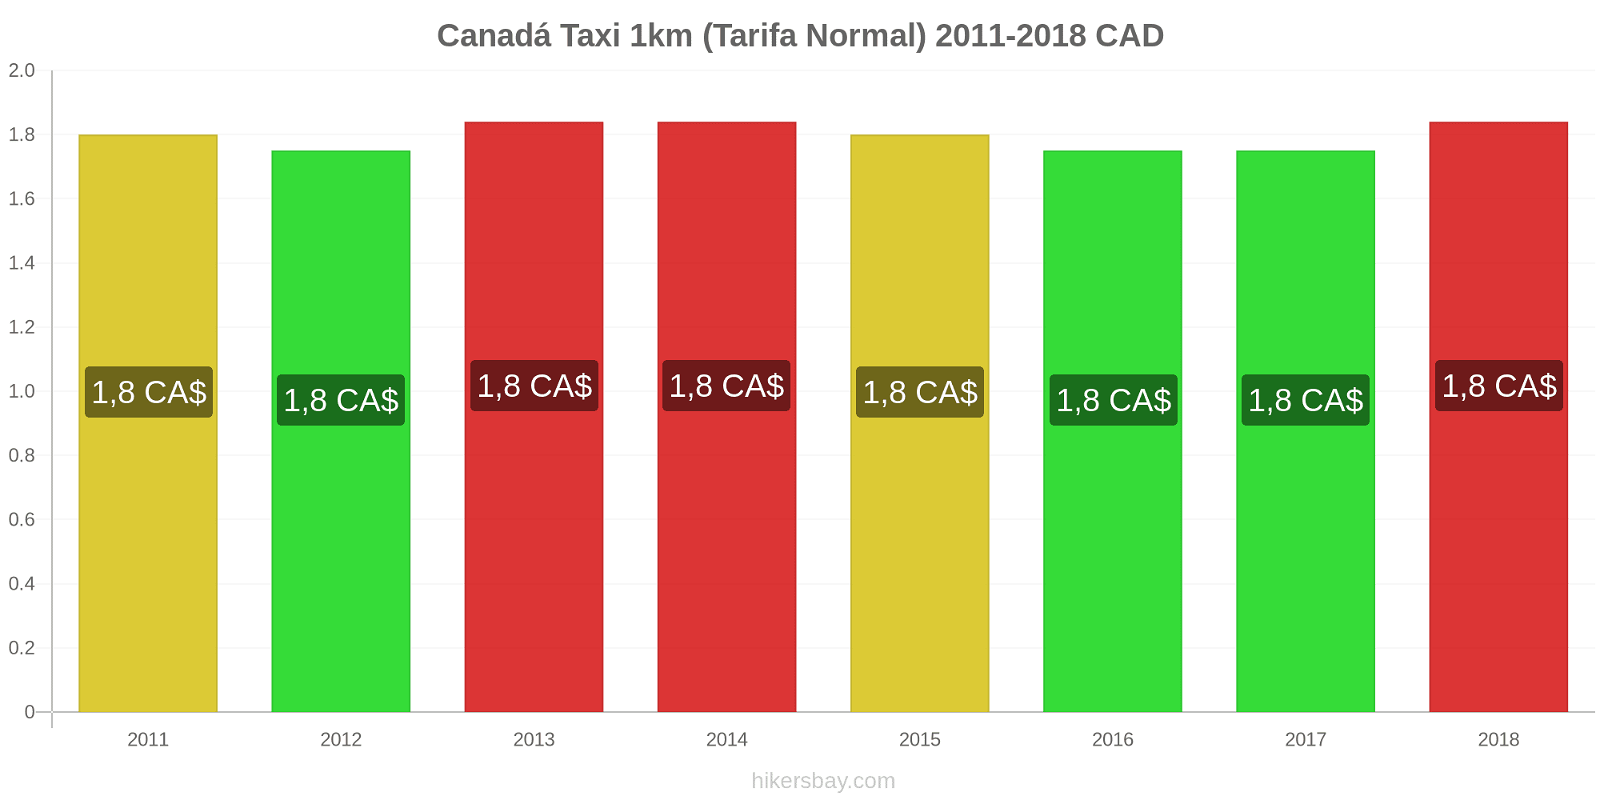 Canadá cambios de precios Taxi 1km (tarifa normal) hikersbay.com